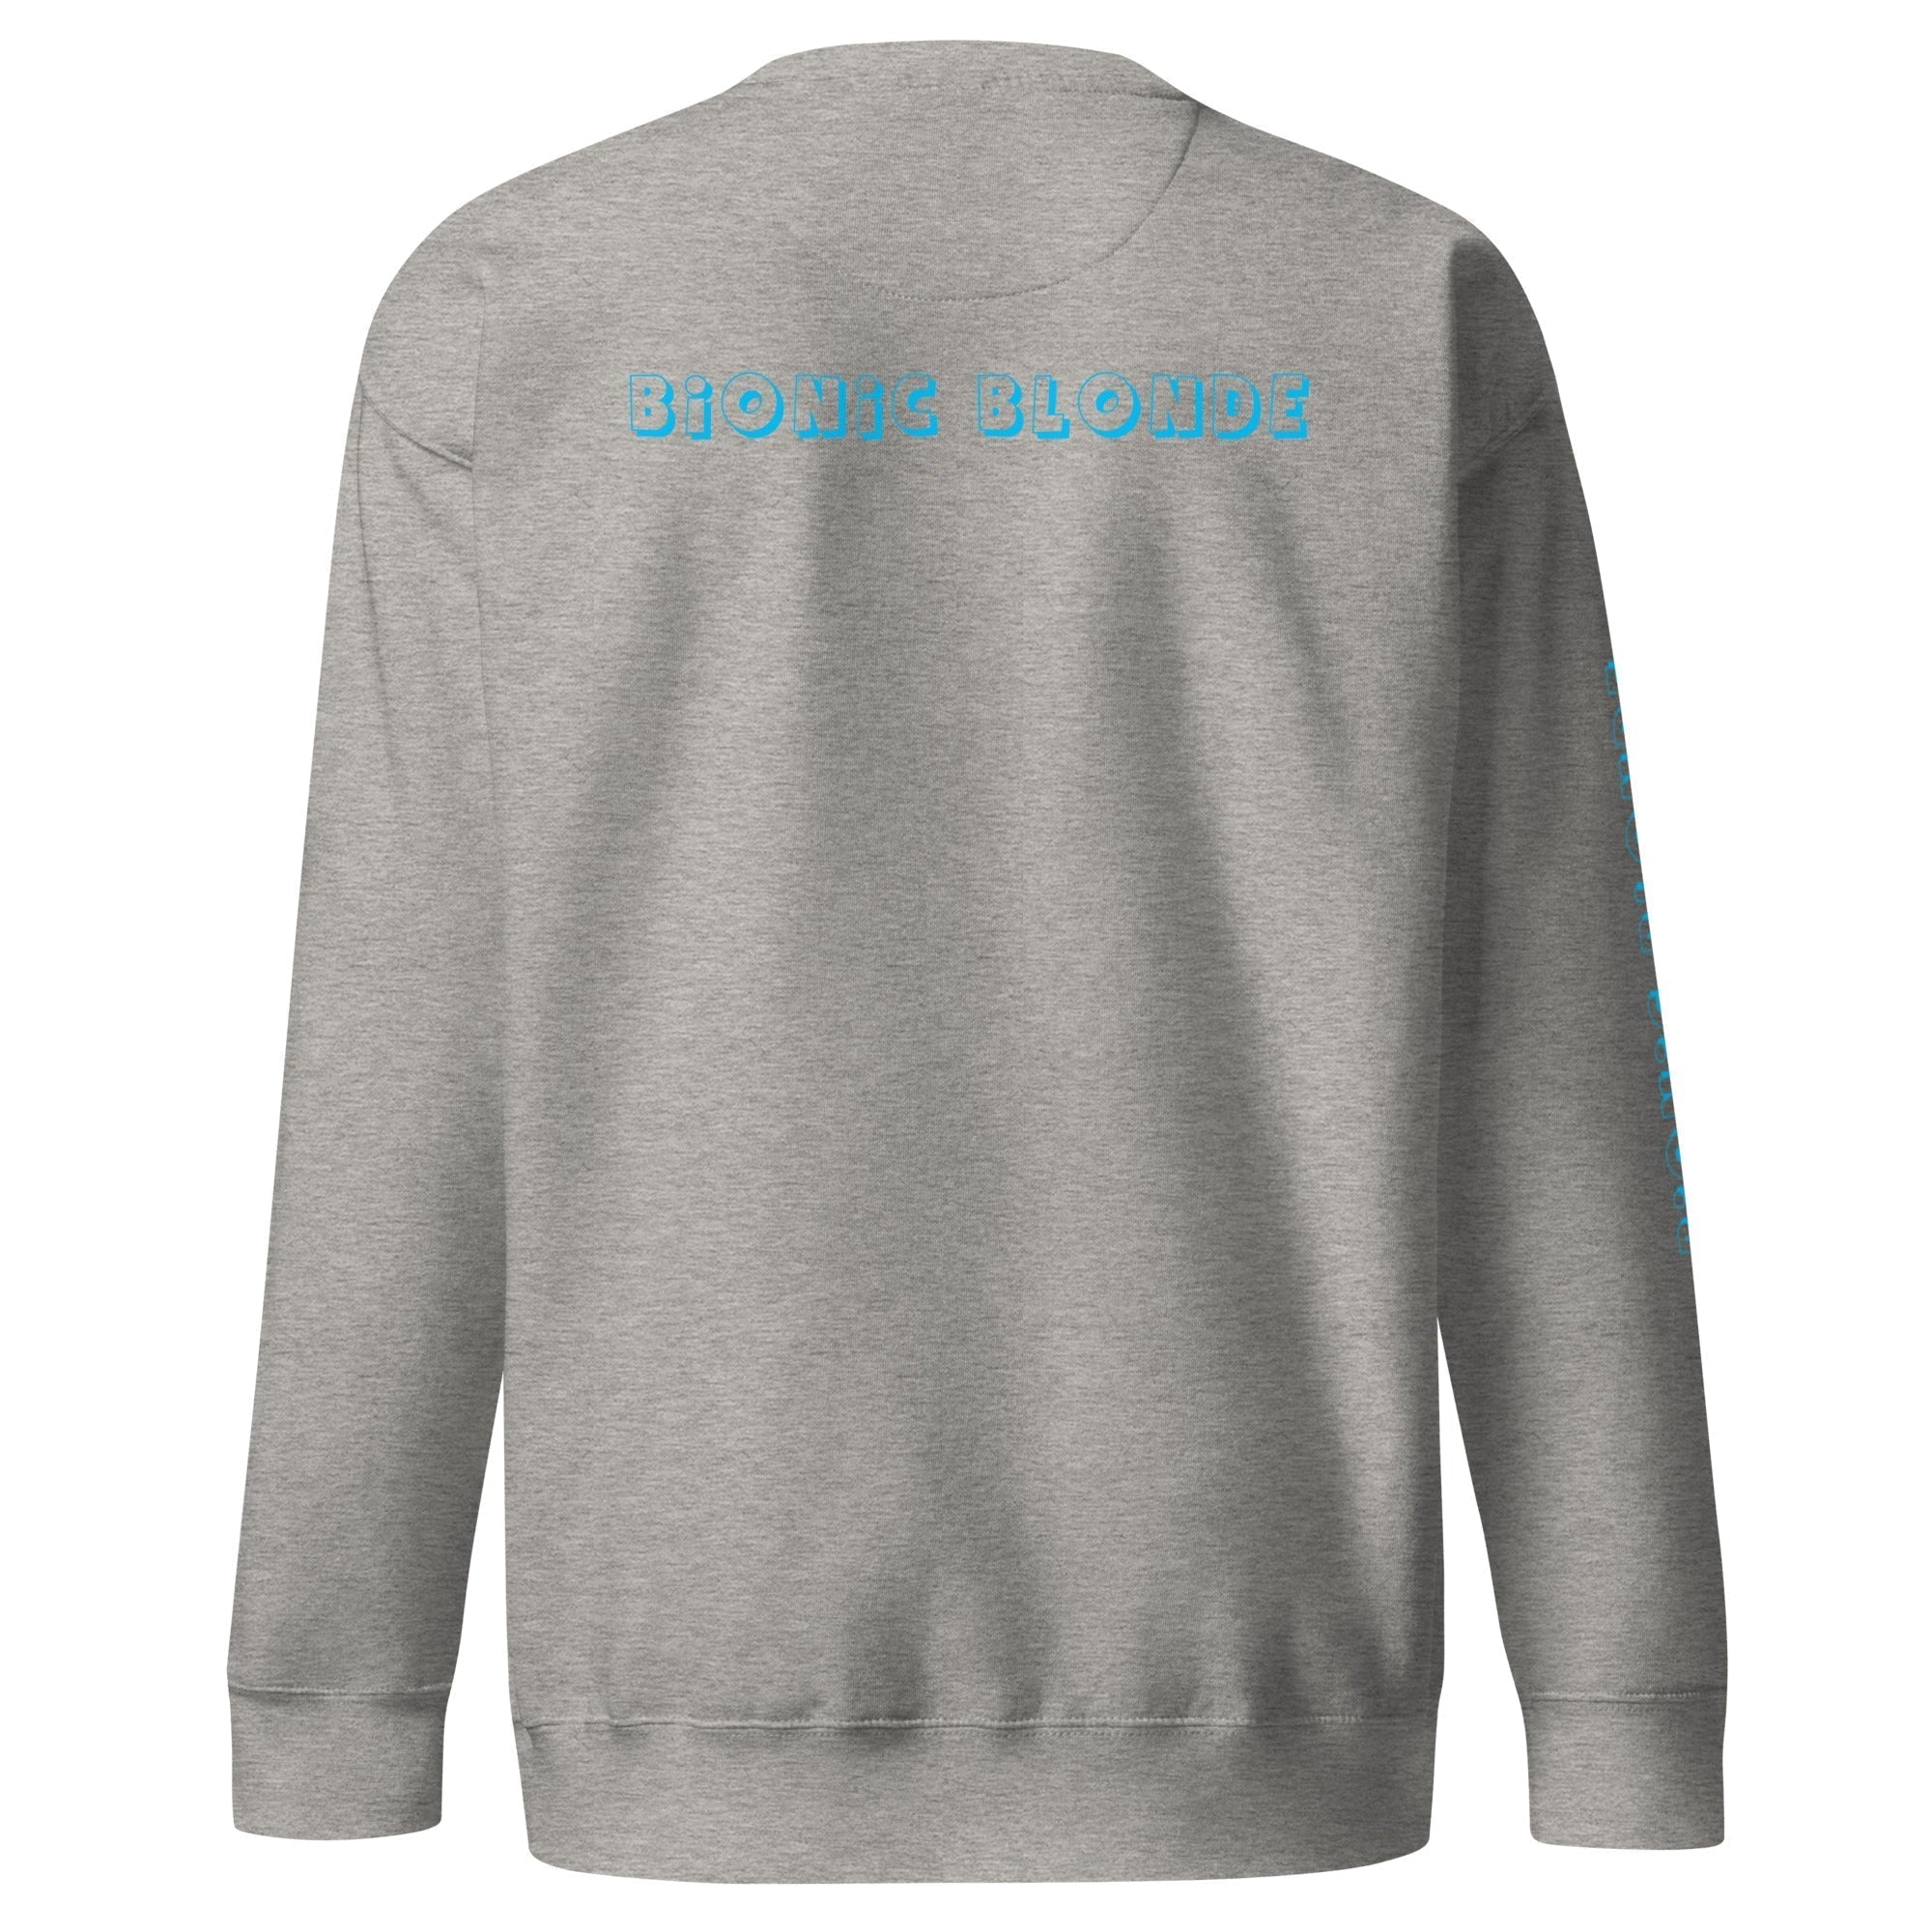 Unisex Premium Sweatshirt - Bionic Blonde - GRAPHIC T-SHIRTS